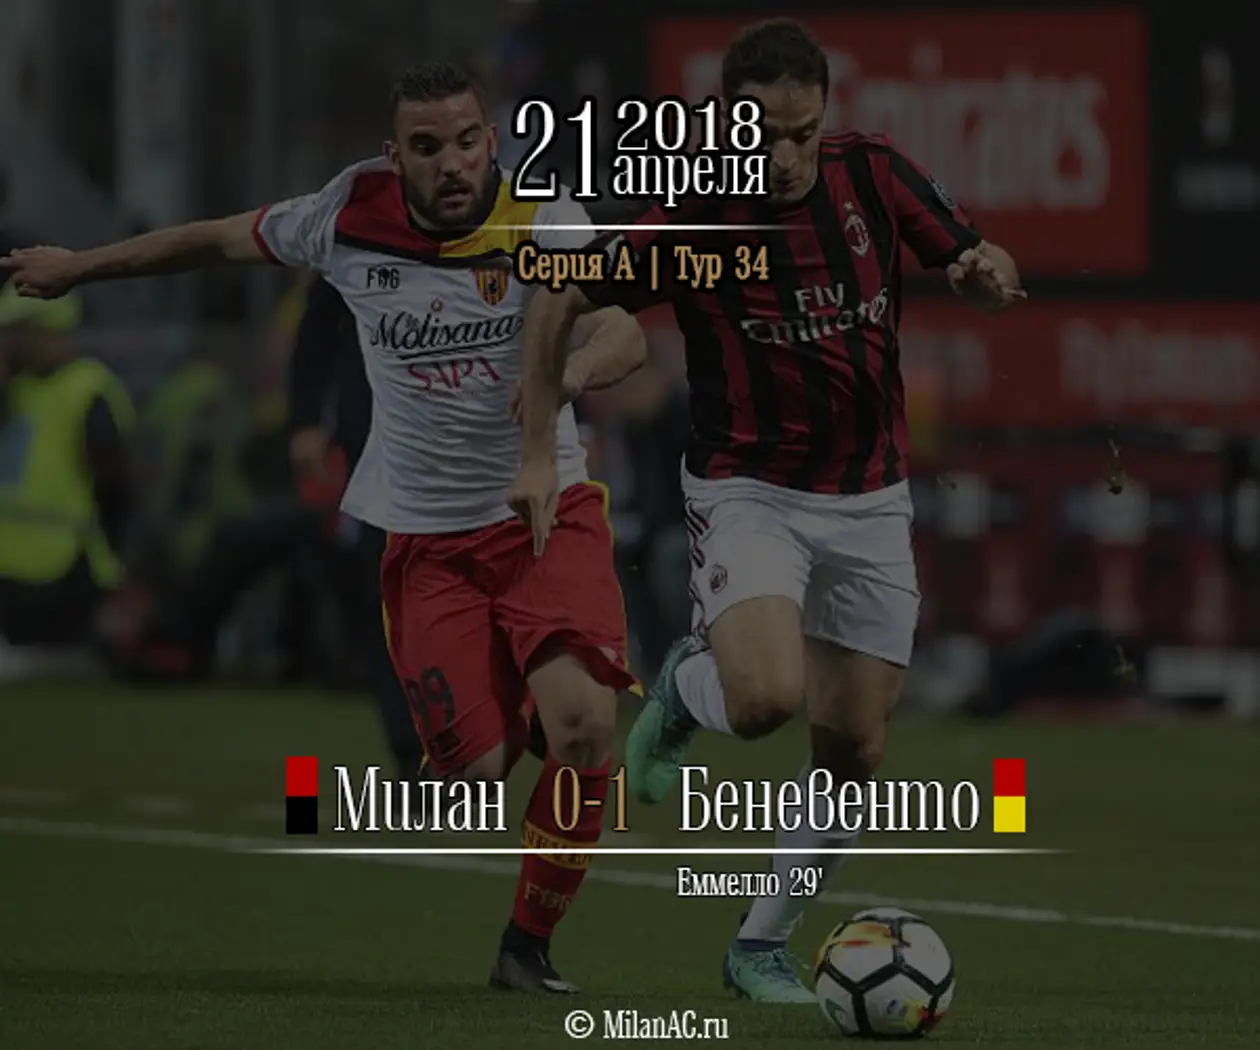 «Милан» — «Беневенто» 0-1 (Серия А, 34 тур)